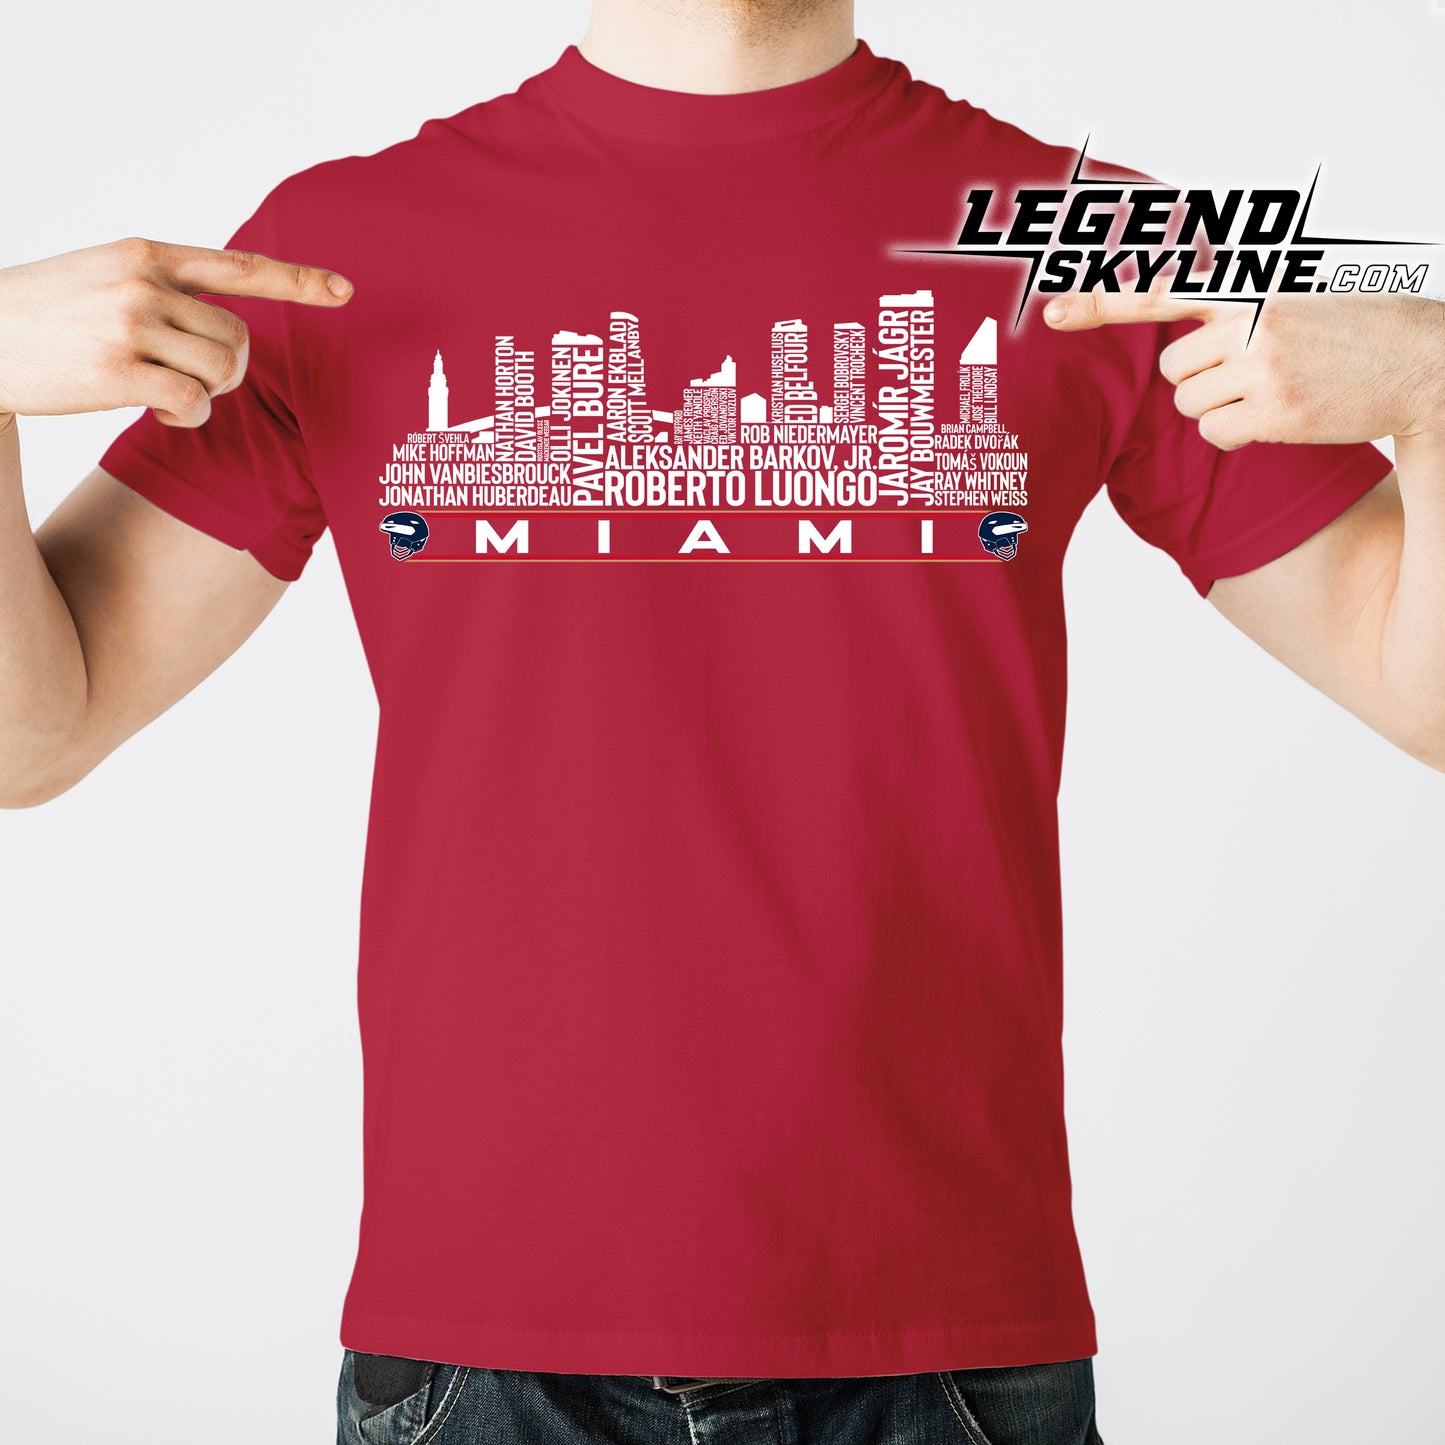 Florida Hockey Team All Time Legends Miami City Skyline Shirt